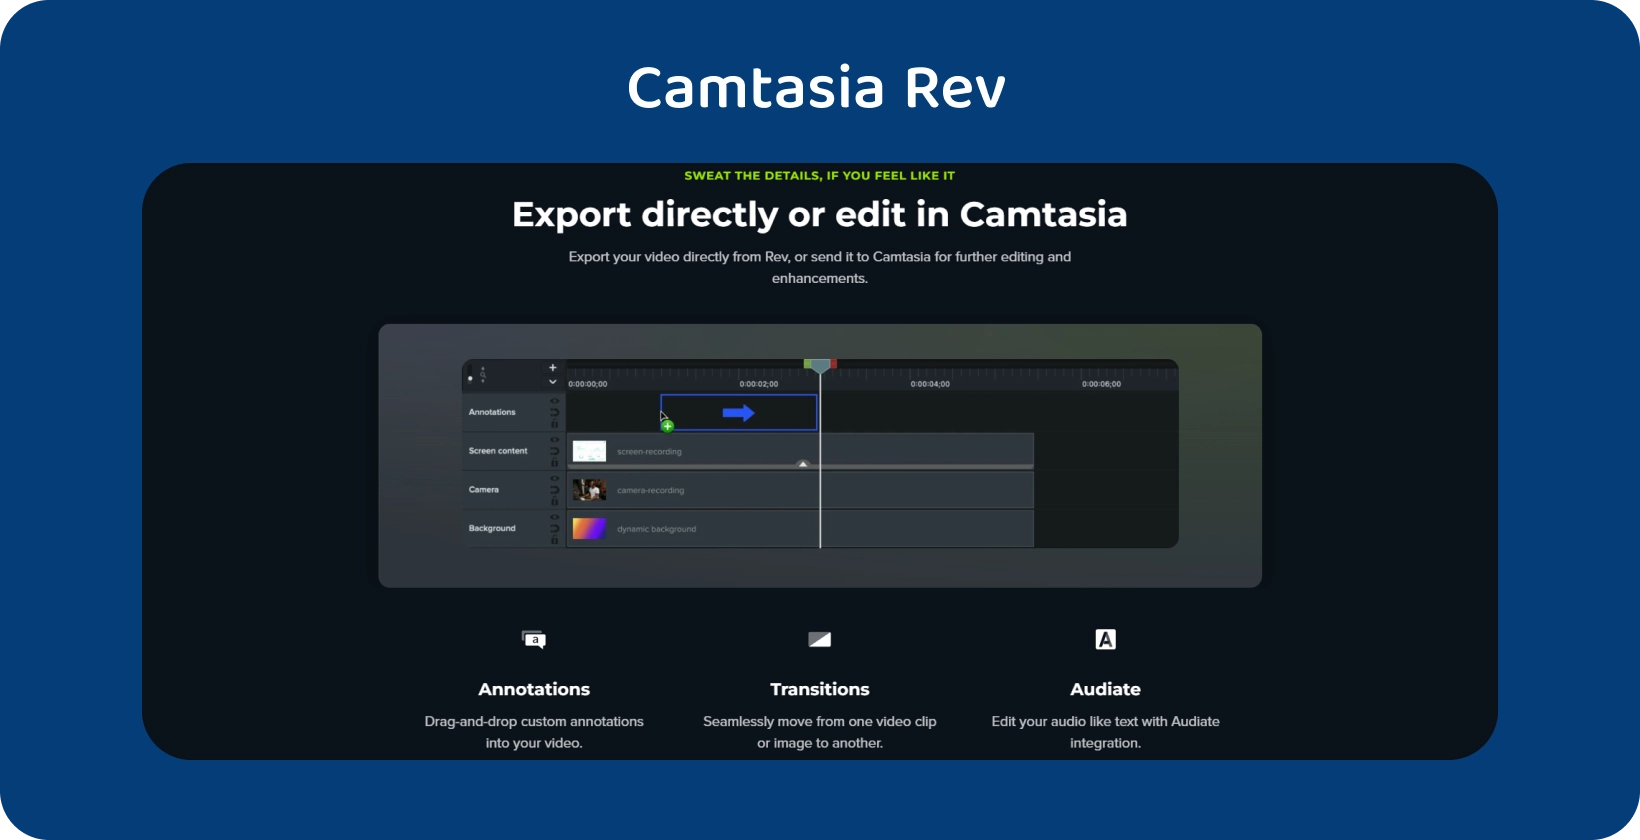 Die Benutzeroberfläche von Camtasia mit der Option zum Exportieren von Untertiteln wurde hervorgehoben, was auf einen optimierten Untertitelungs-Workflow hinweist.